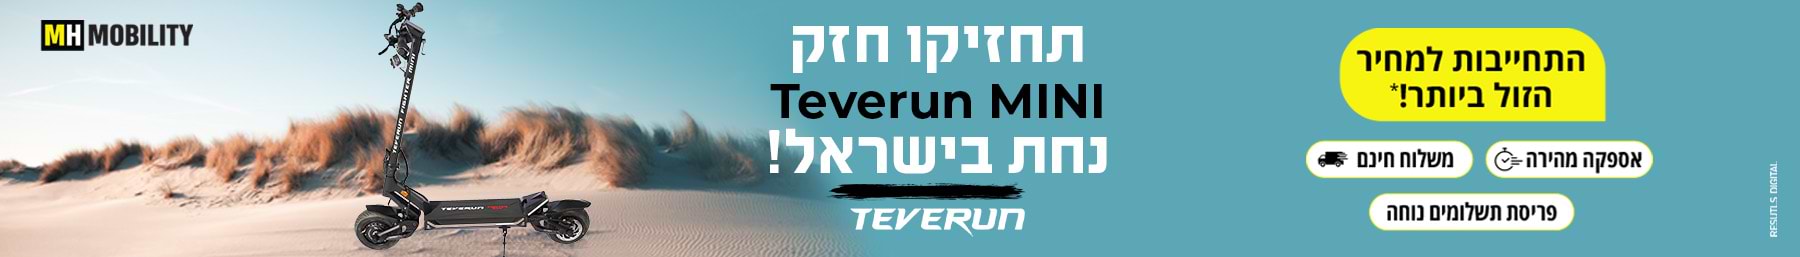 תחזיקו חזק Teverun Mini נחת בישראל!